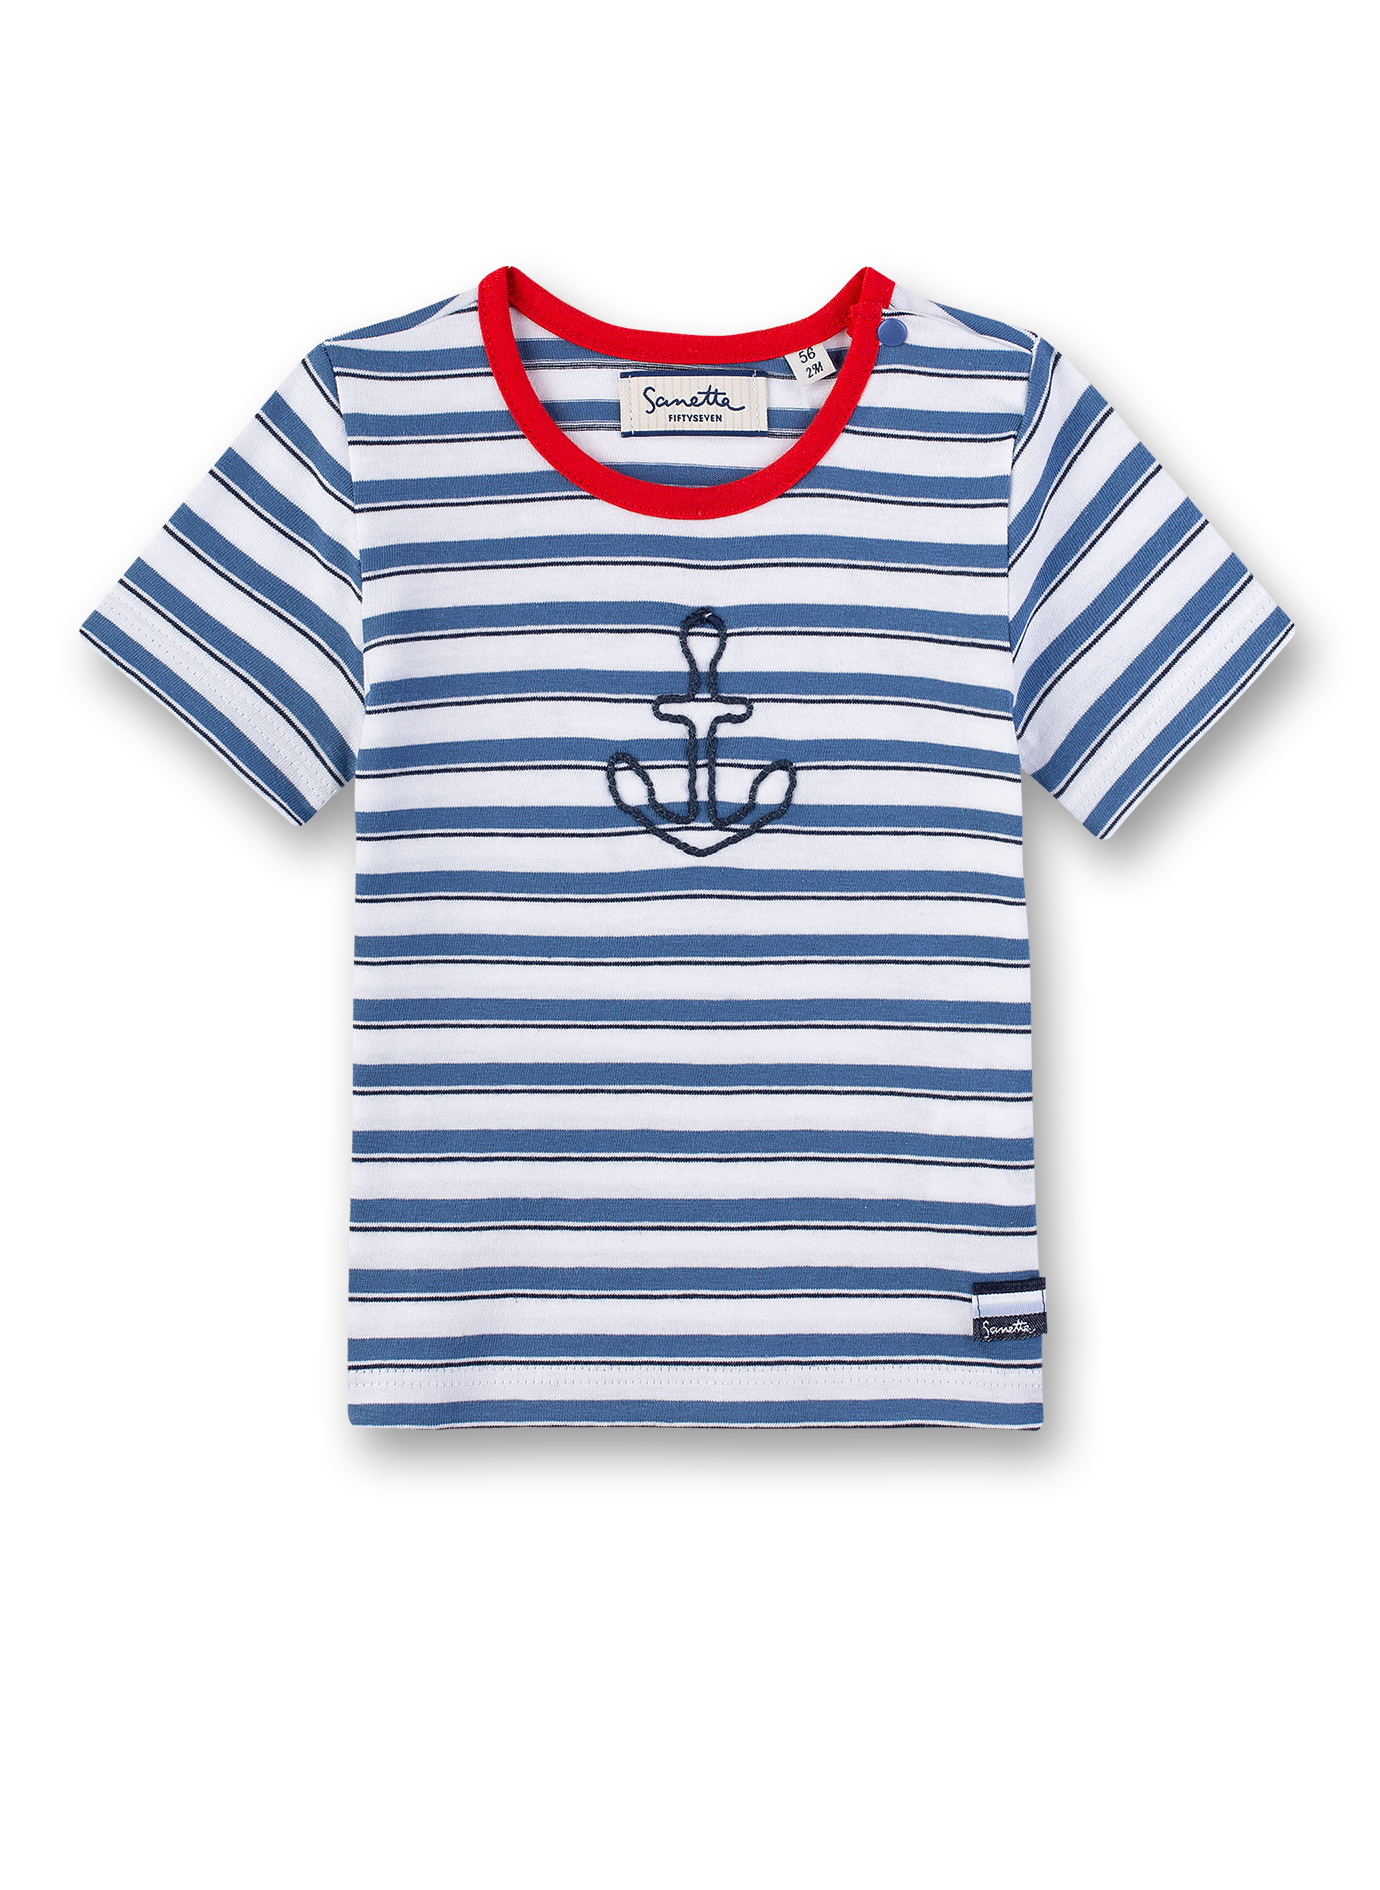 Jungen T-Shirt Blau-geringelt Small Sailor